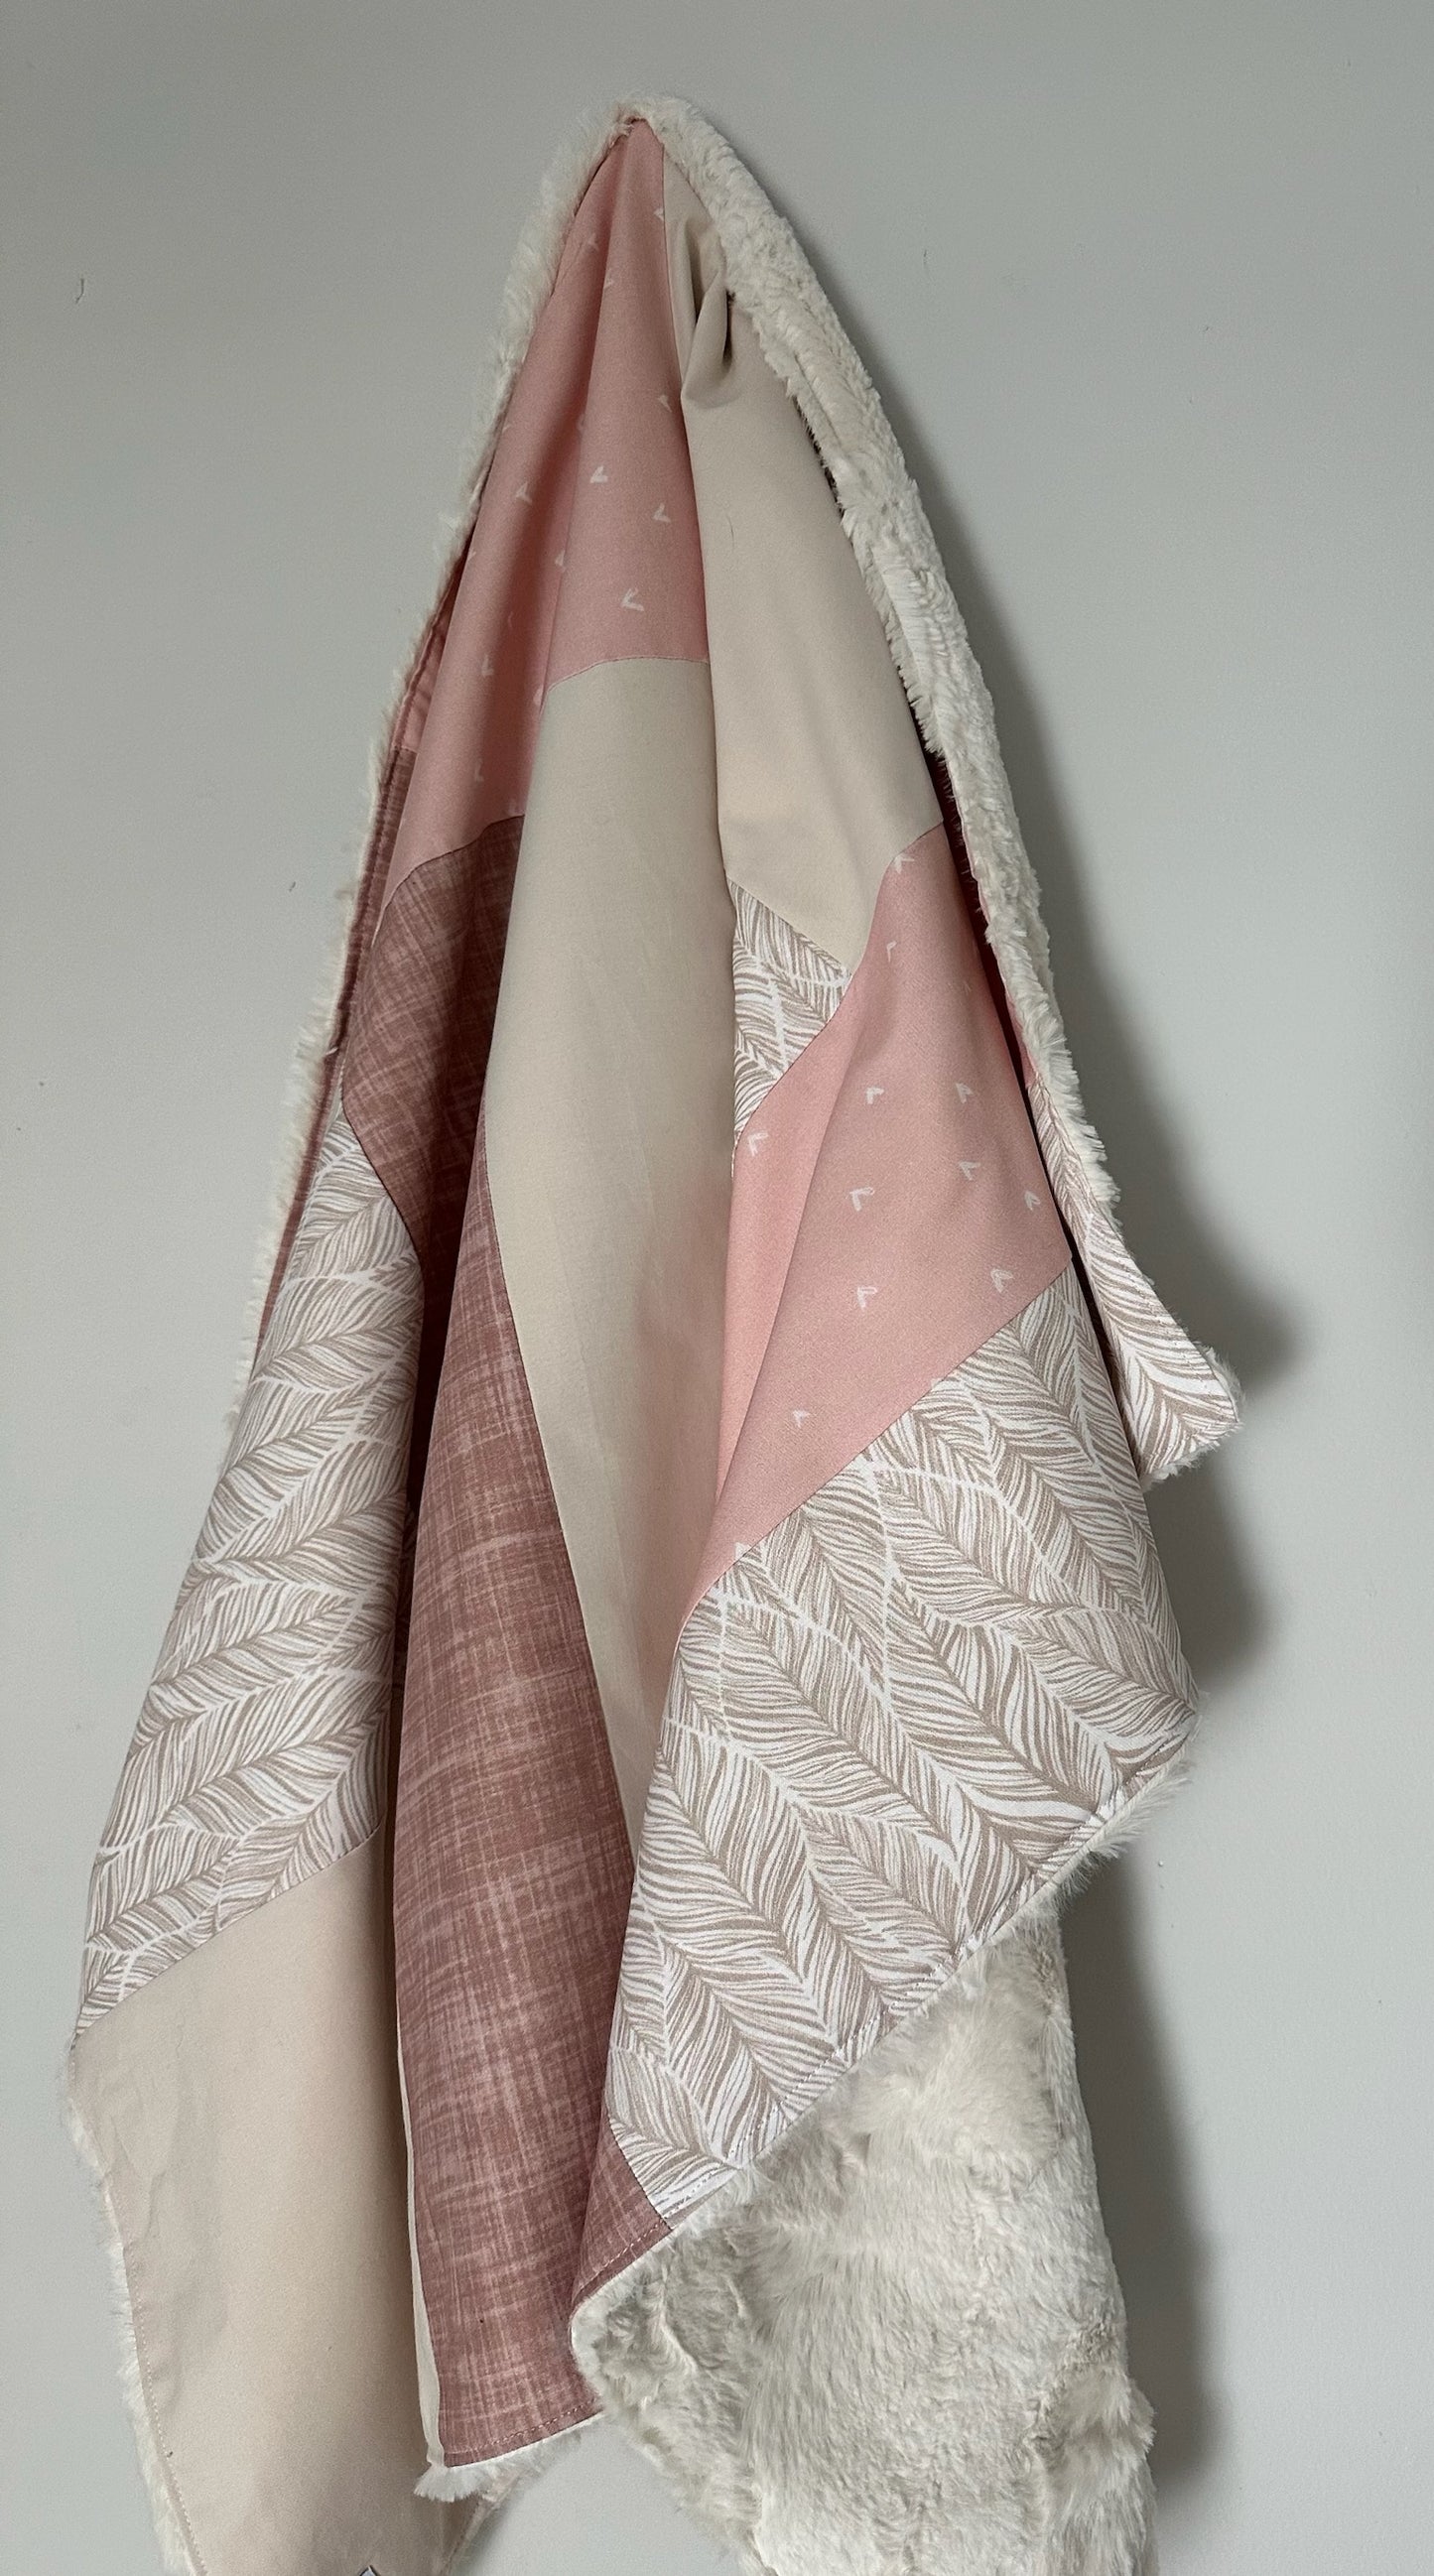 Couverture de style courtepointe Coeur rose pâle et feuillage beige  Endos doux au choix et possibilité d'ajouter des accessoires assortis